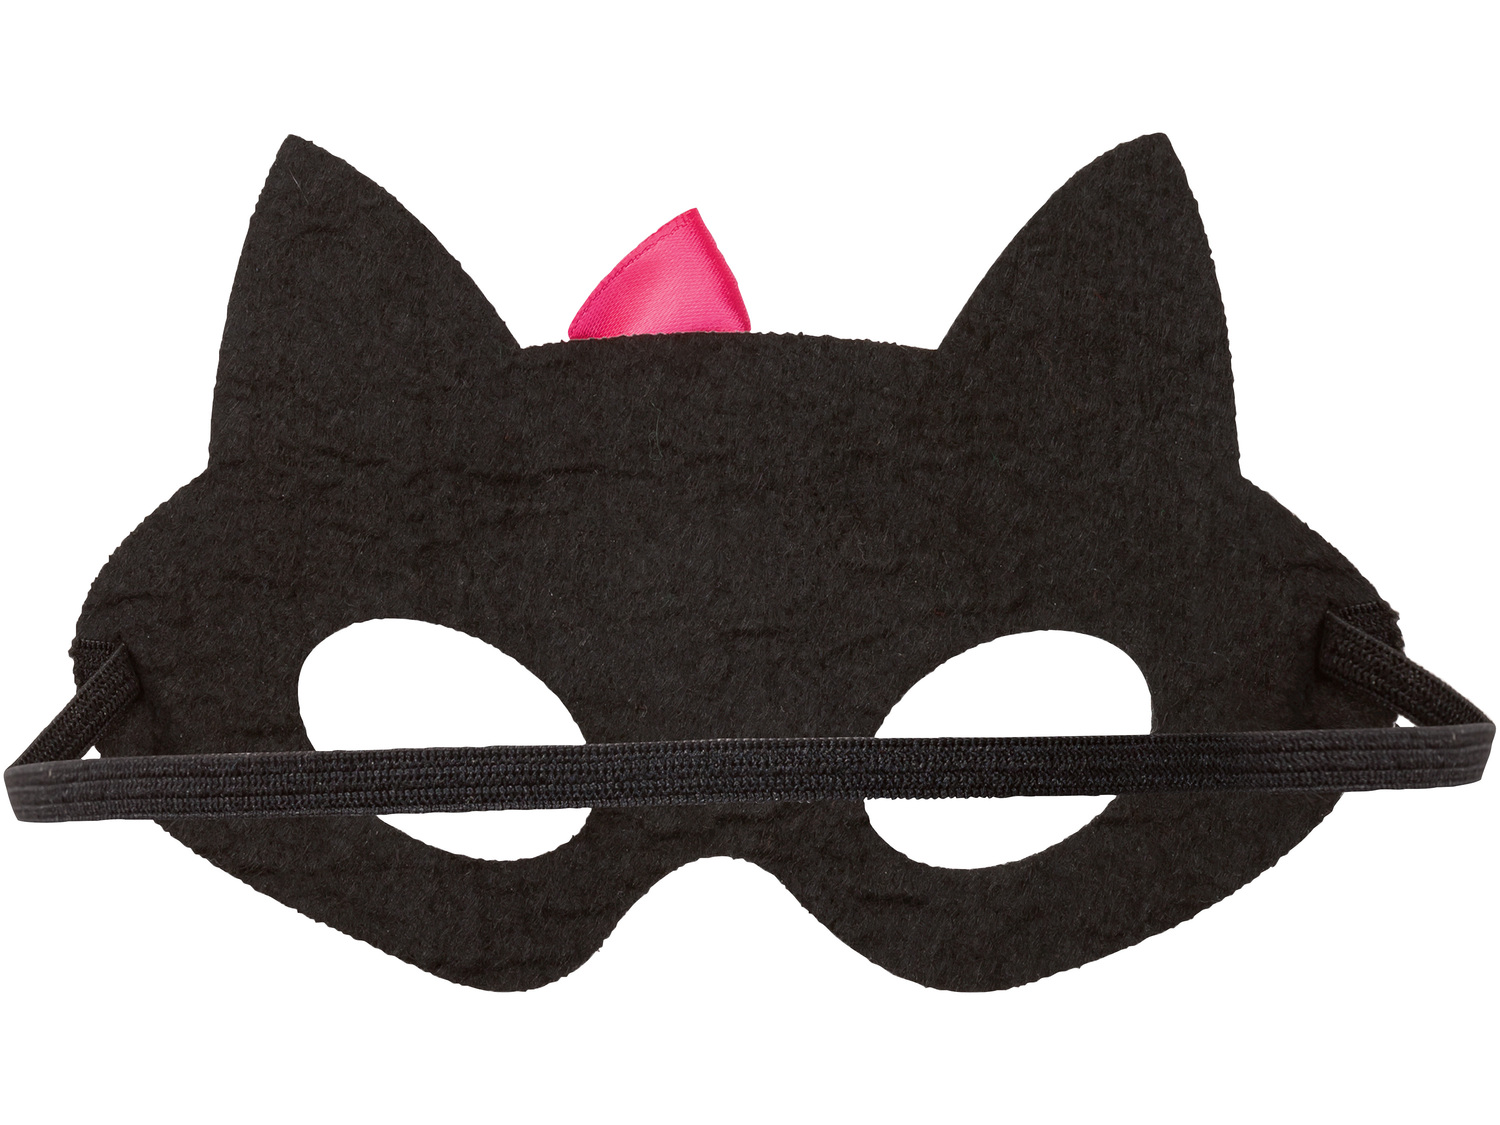 Filcowa maska na Halloween , cena 7,99 PLN  
-  rozmiar uniwersalny dla dzieci
Opis